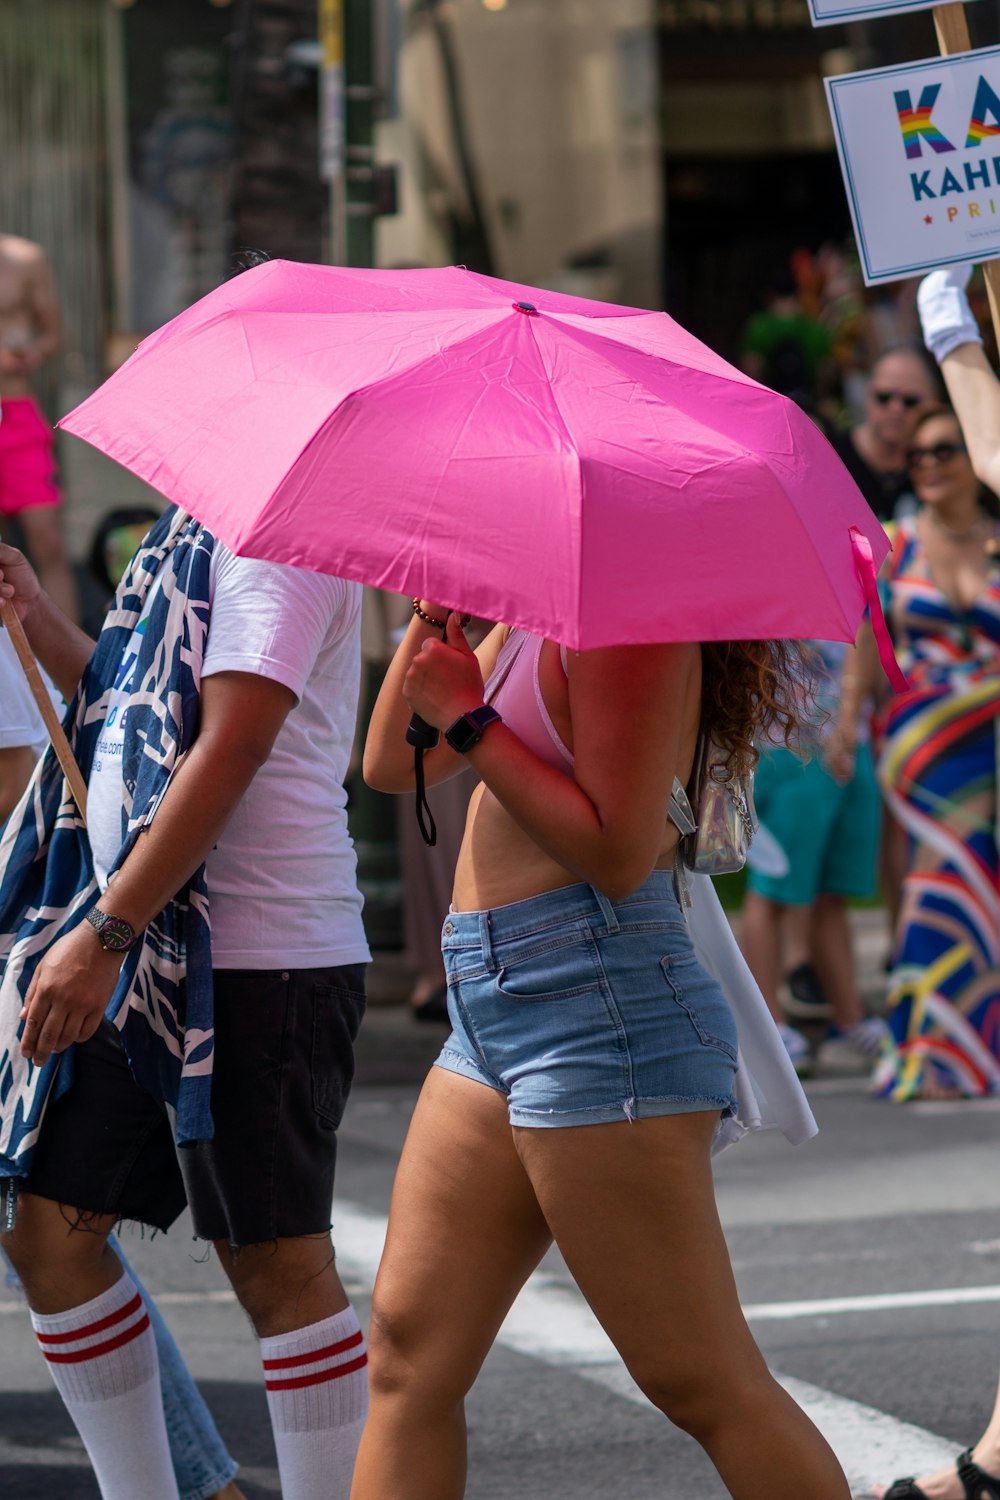 Frau trägt weißen BH mit rosa Regenschirm, während sie auf dem Weg aufwacht, umgeben von Menschen